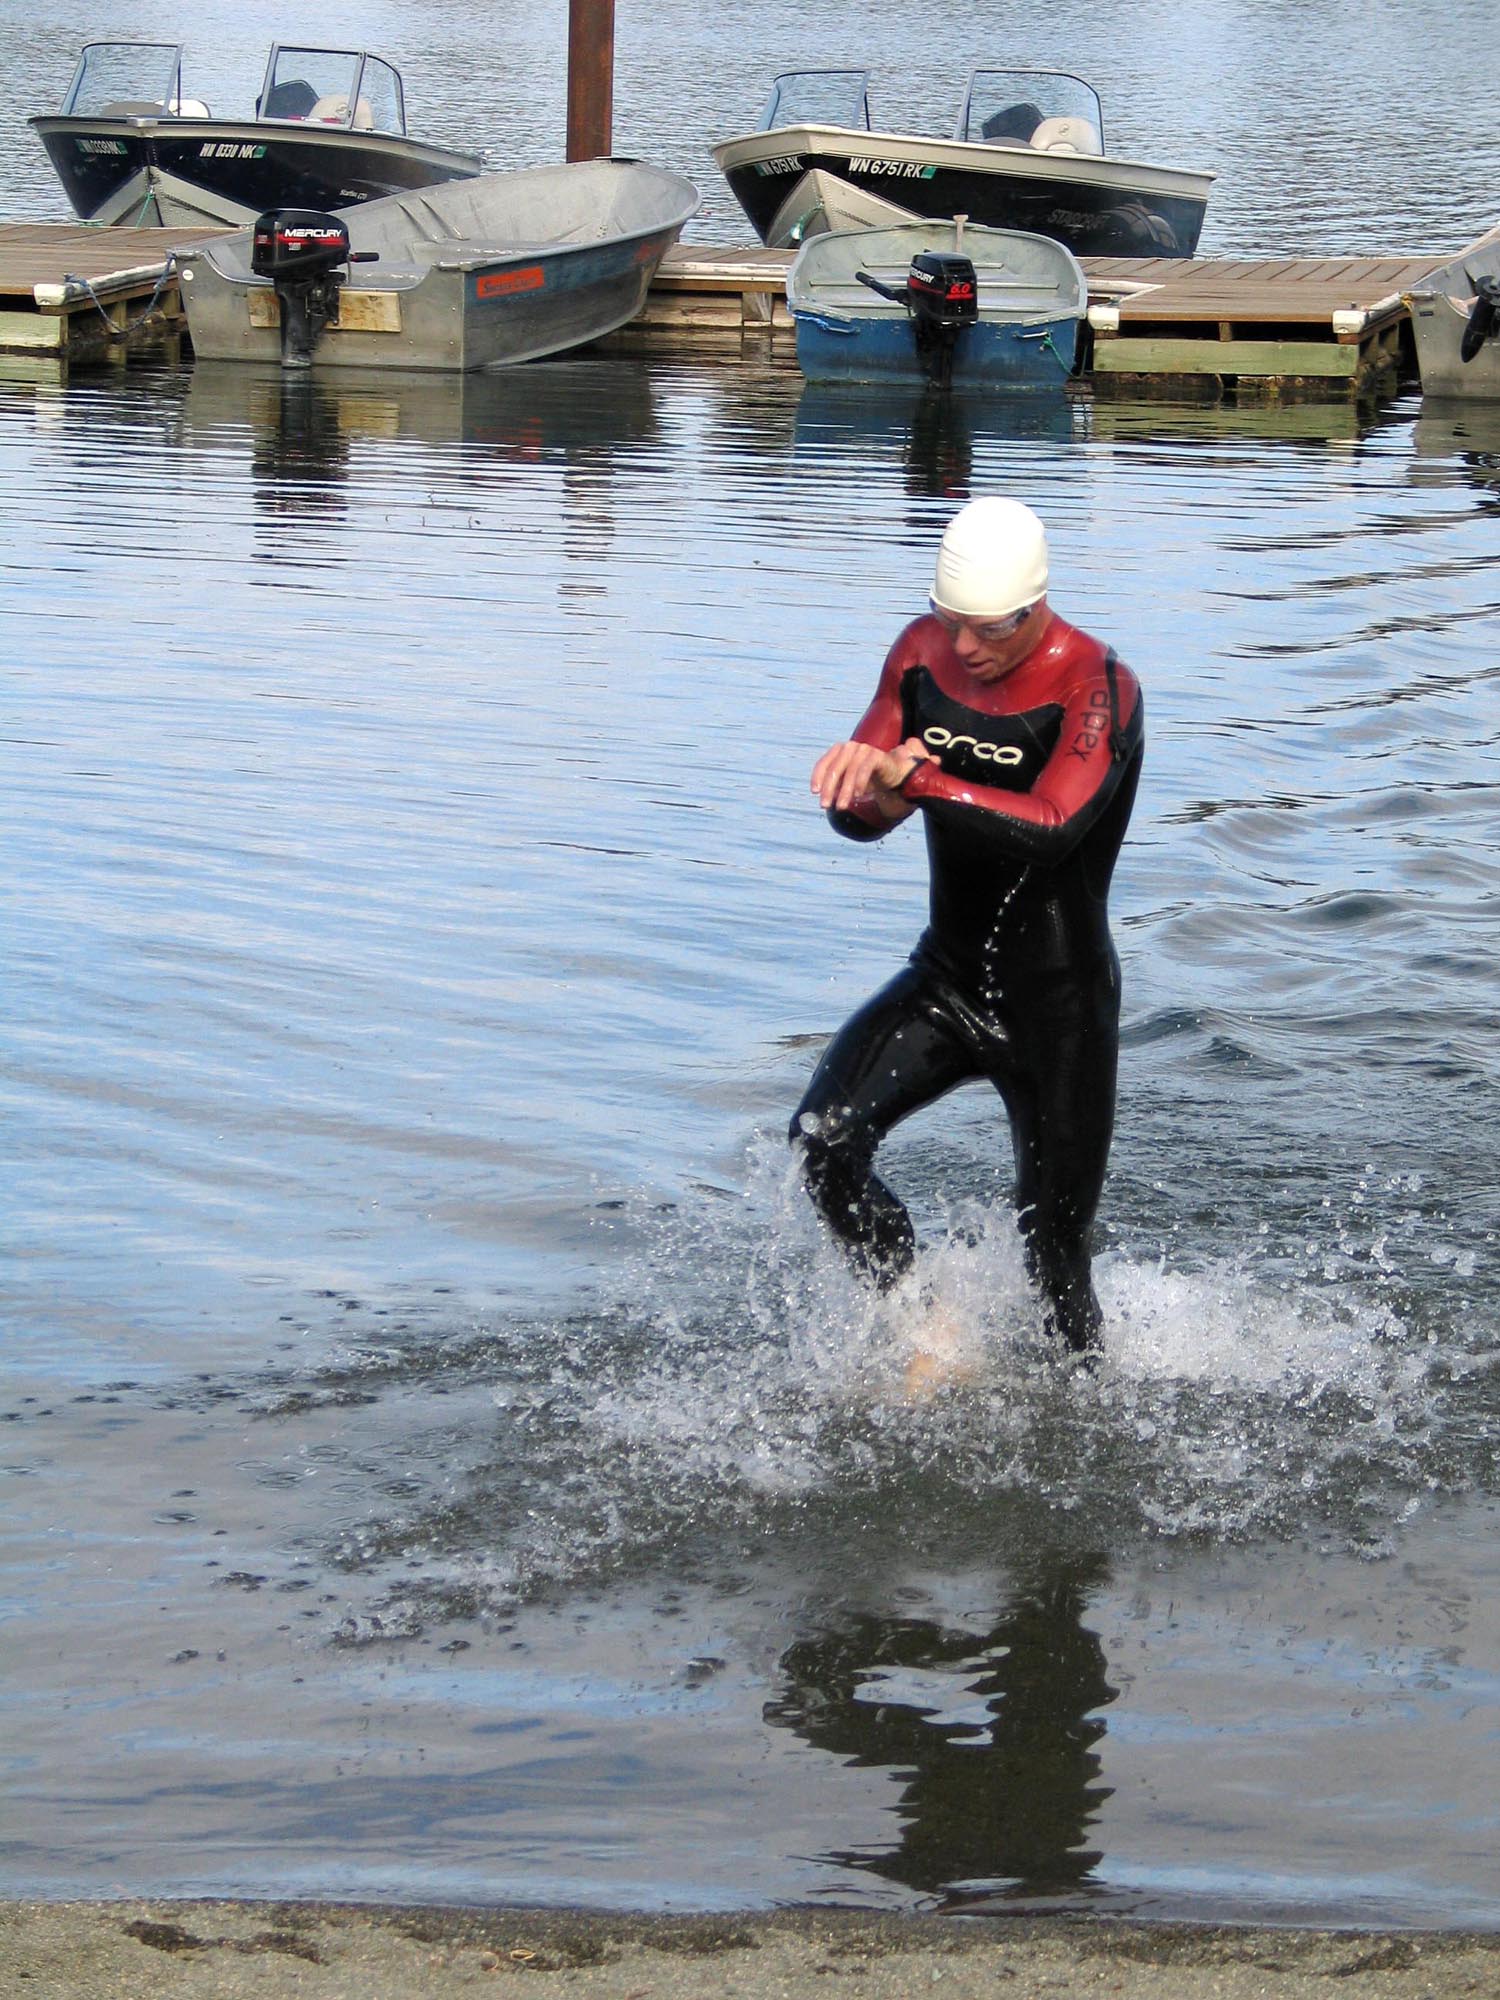 Fairchild athletes compete in Clear Lake Triathlon > Fairchild Air